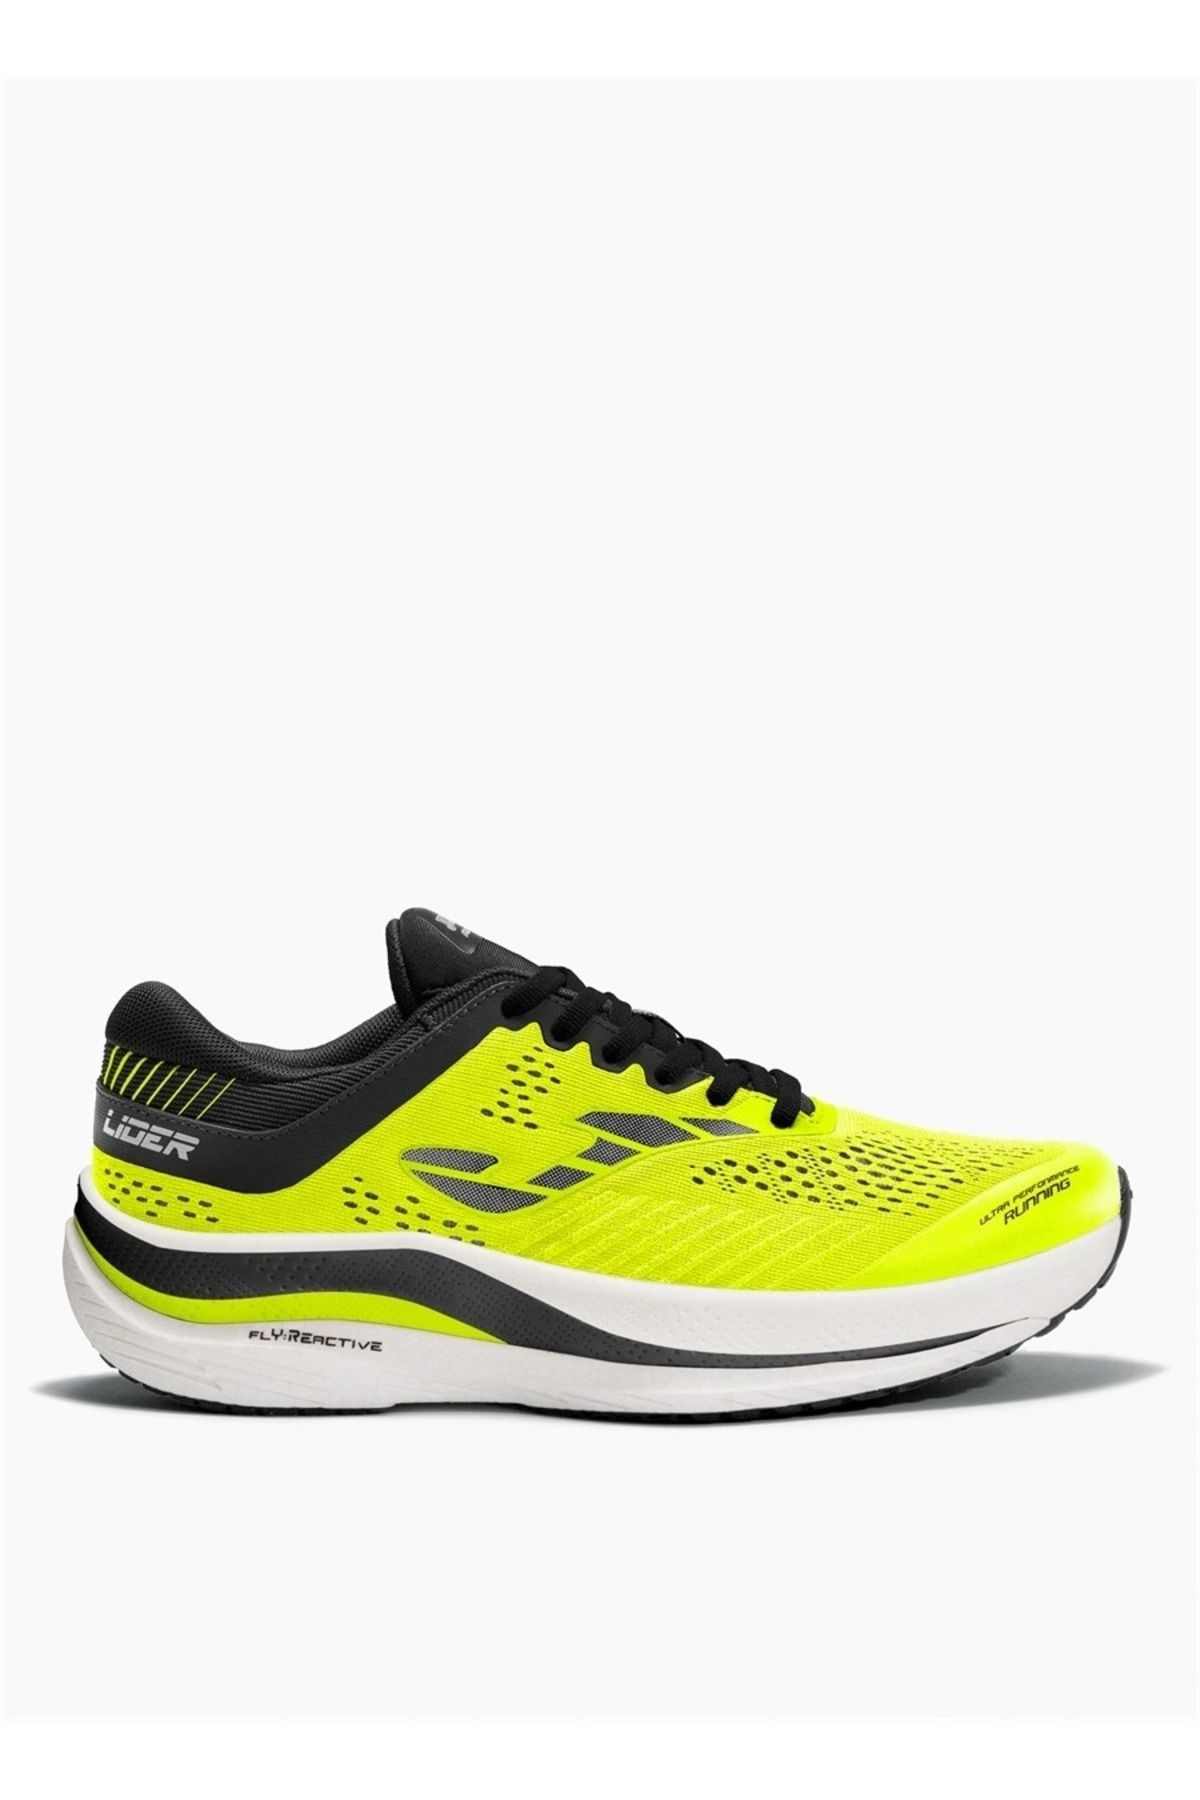 Joma Neon Sarı Erkek Koşu Ayakkabısı RLIDEW2311 LIDER 2311 LEMON FLUO